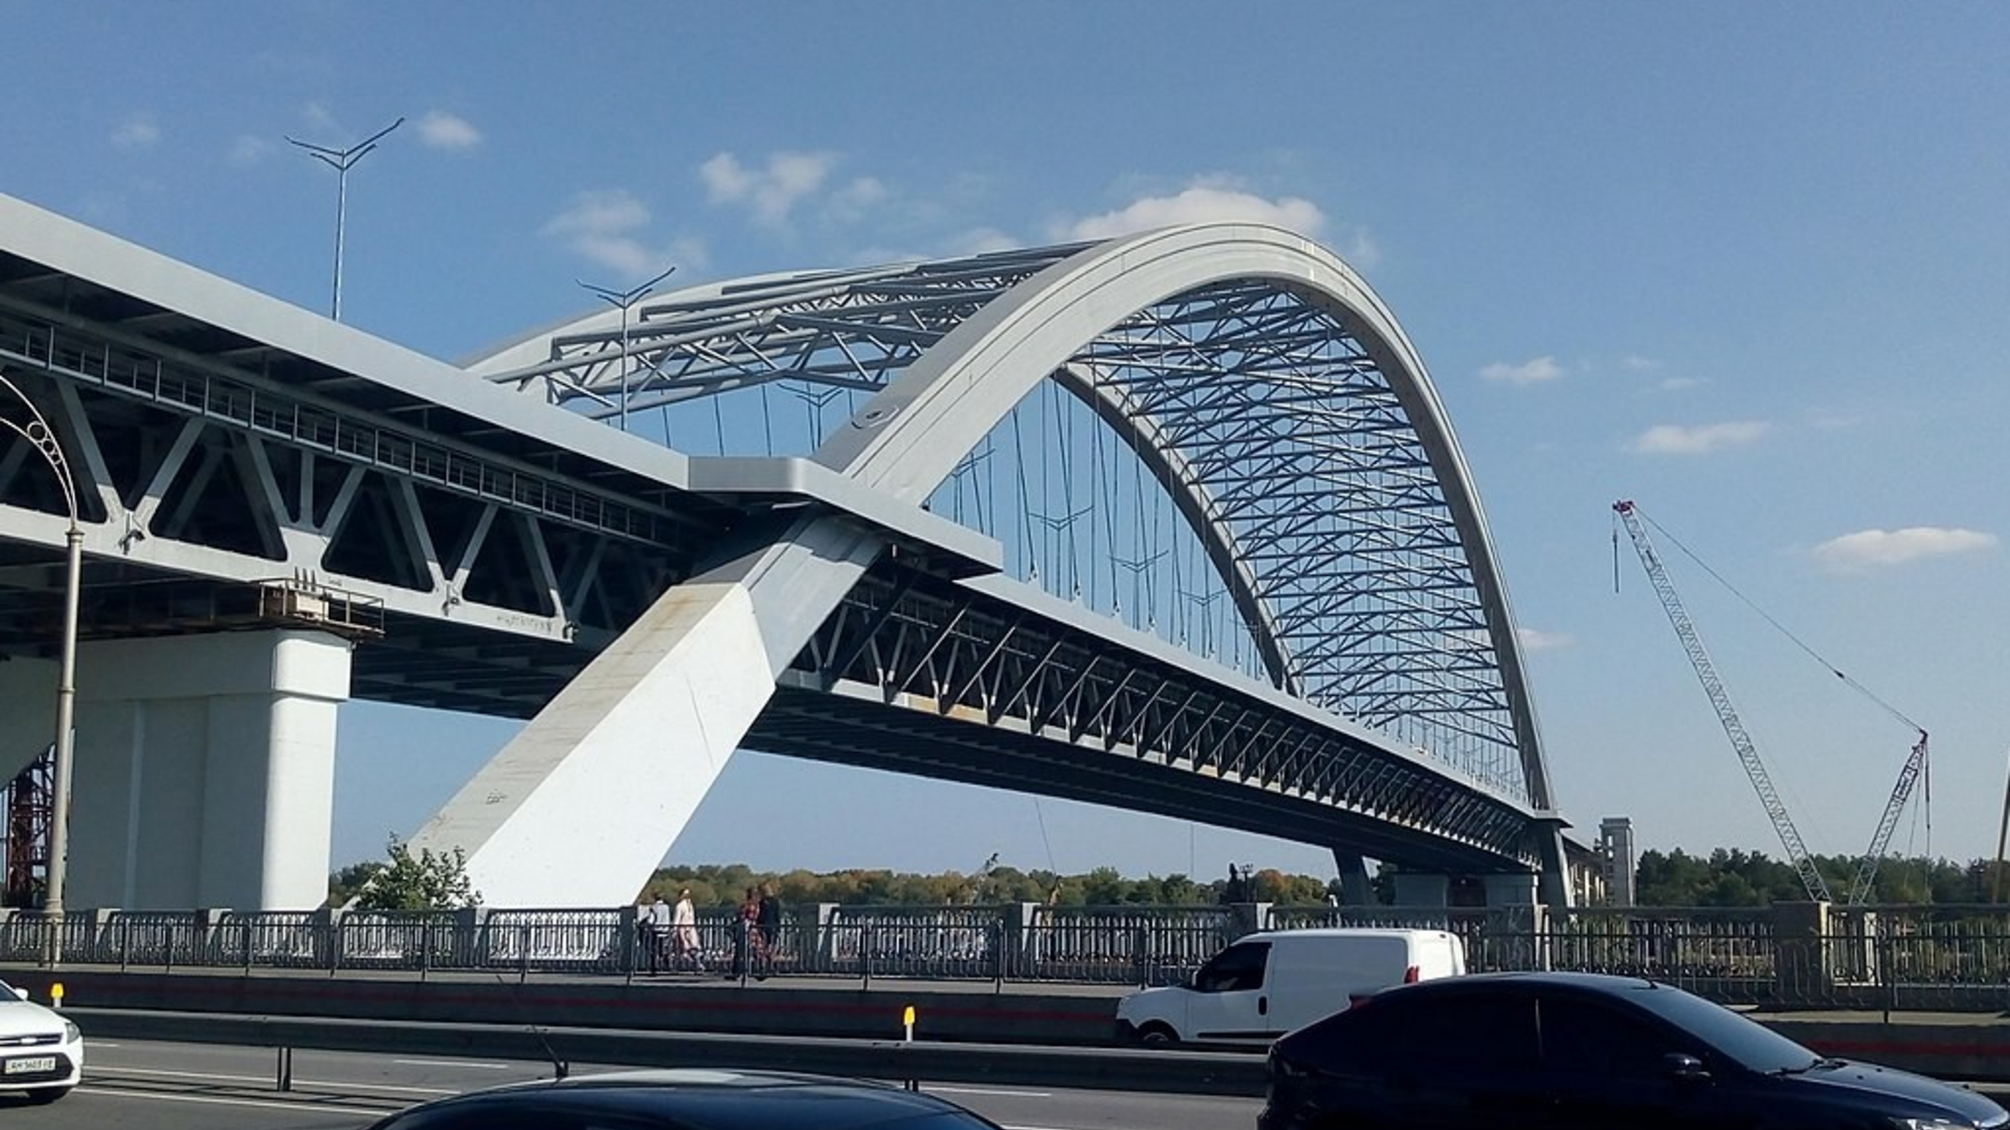 Розтрата у 24 мільйони на будівництві Подільського мосту: директору генпідрядної організації оголосили підозру